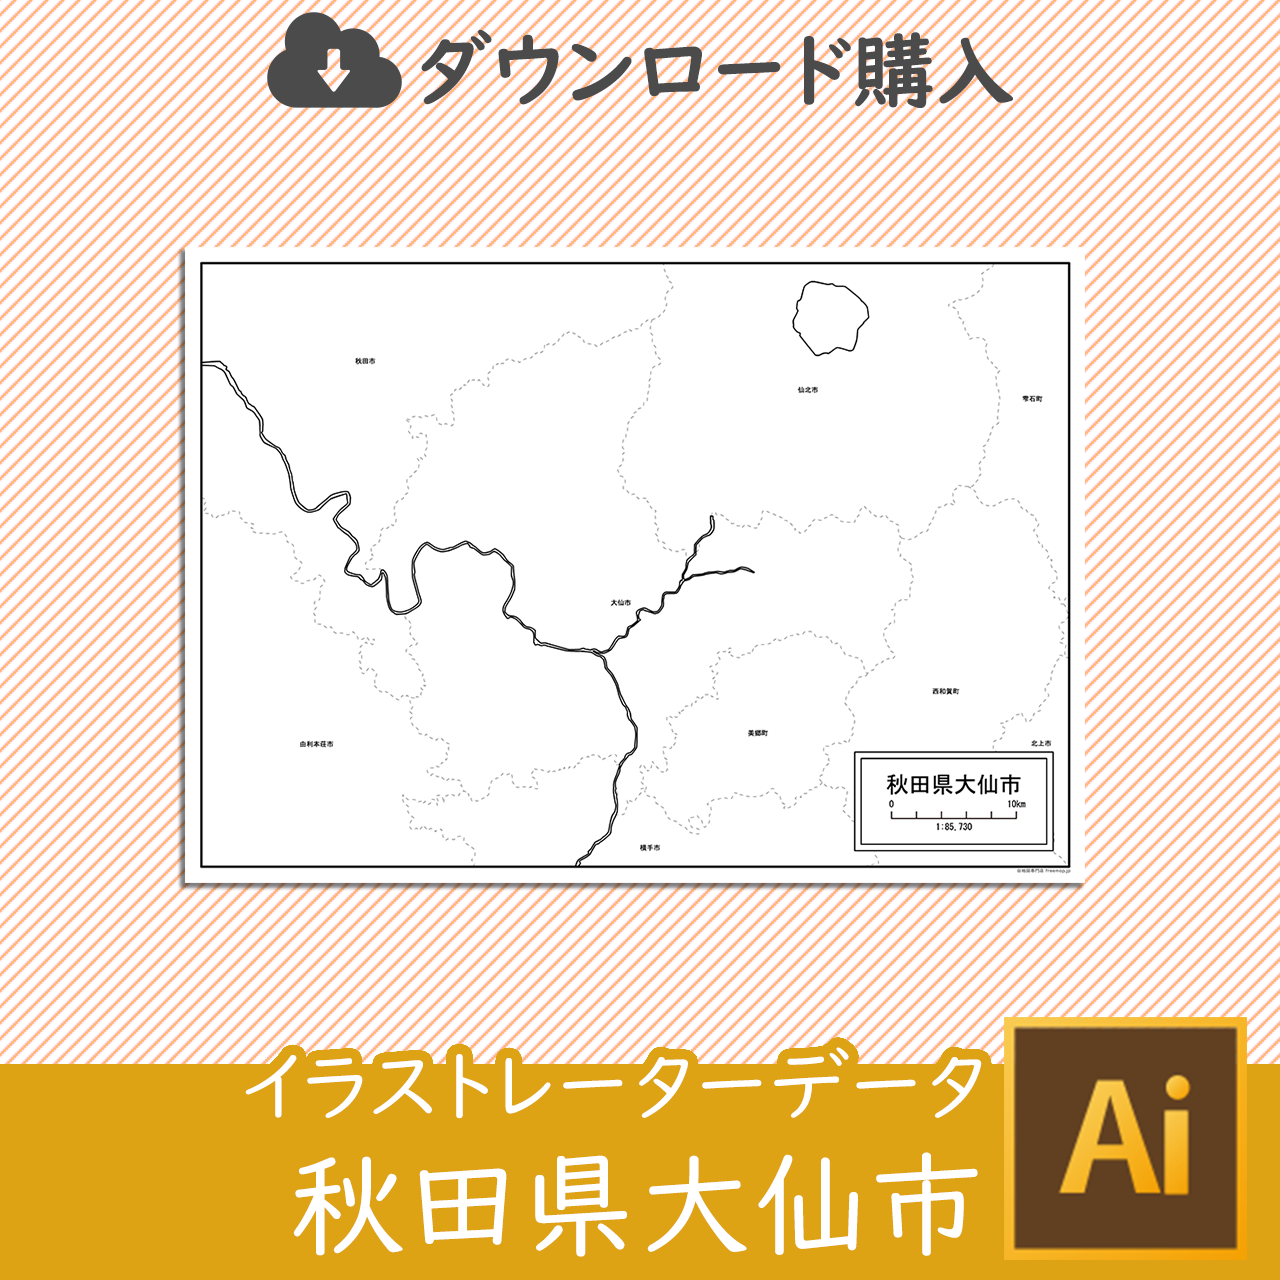 大仙市のaiデータのサムネイル画像